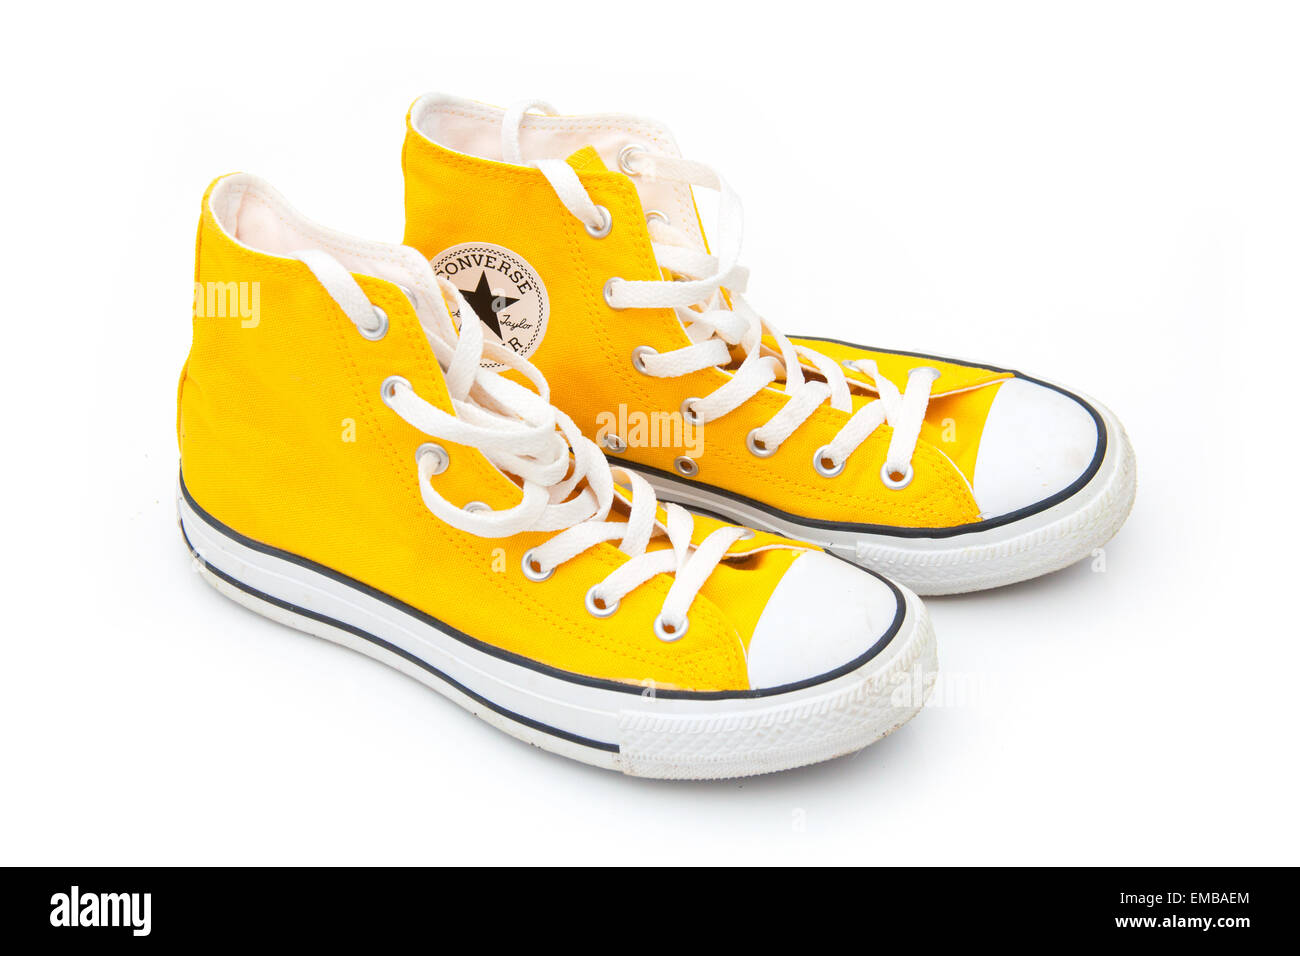 Gelbe Converse Stiefel isoliert auf einem weißen Studio-Hintergrund  Stockfotografie - Alamy